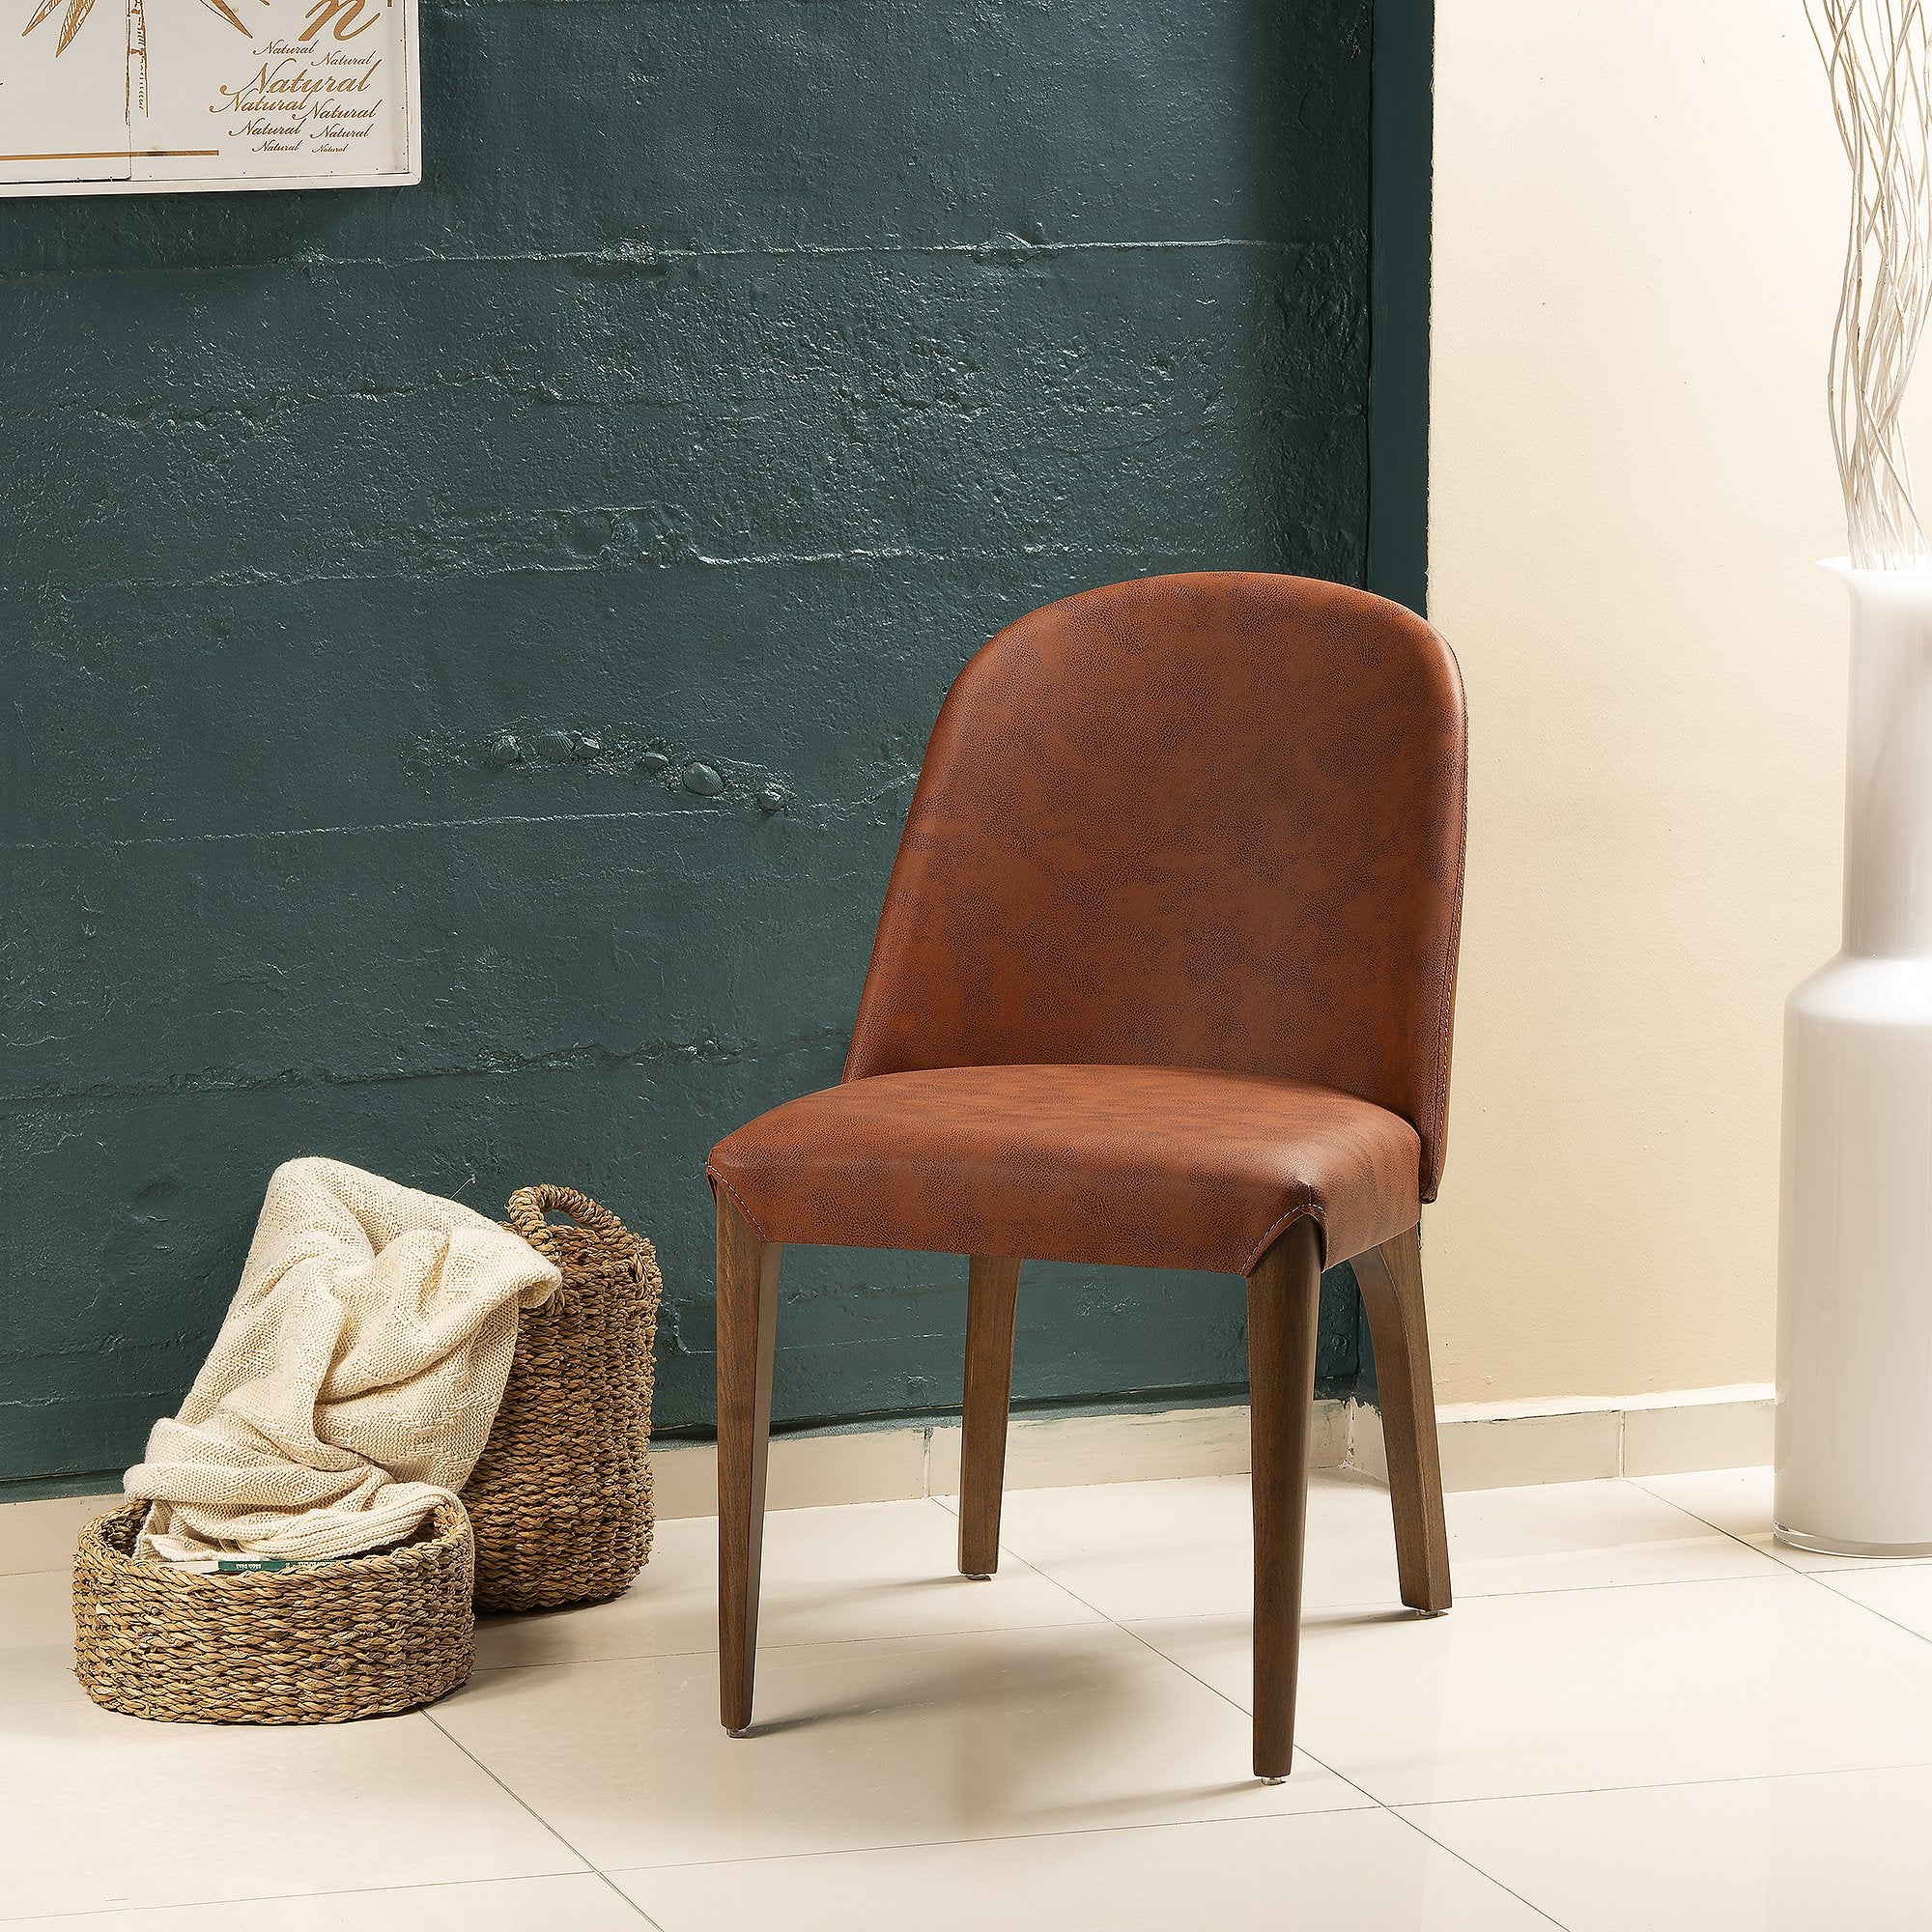 Bolen Upholstered Solid Wood Chair - Set of 2 - Brick Red & Walnut - 32.2" H x 17.7" W x 22.2" D - Decorotika